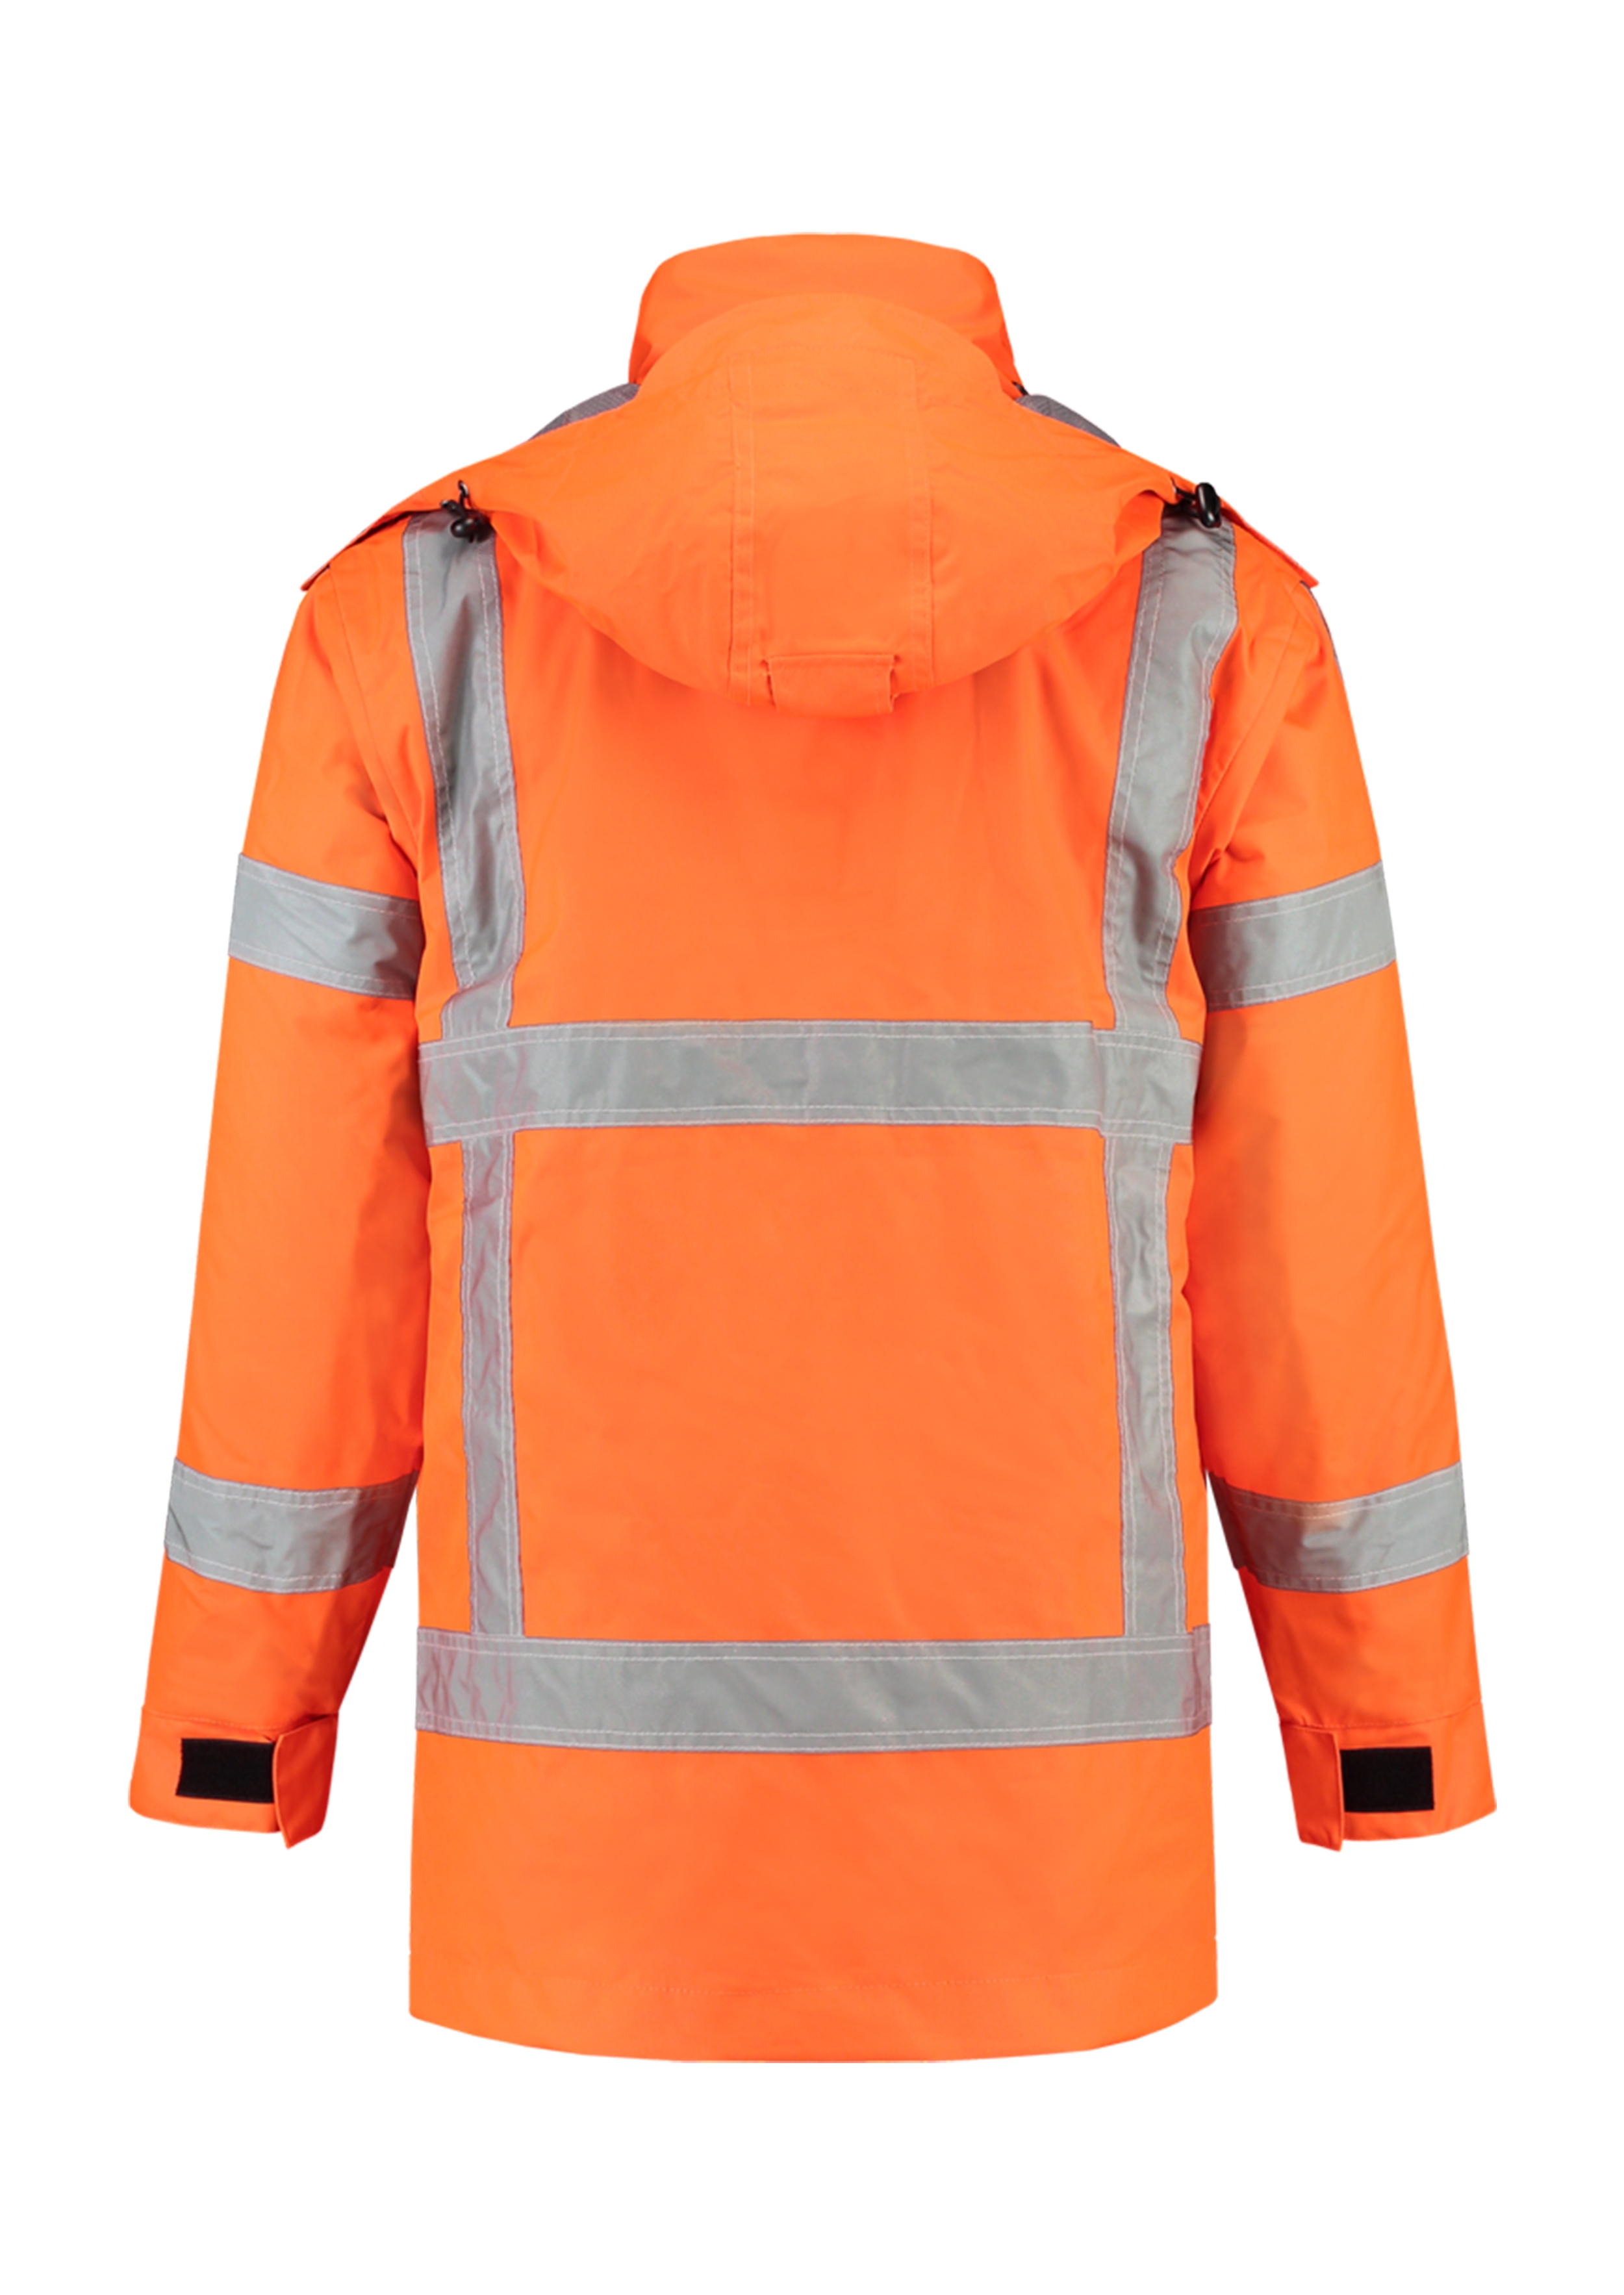 Unisex Arbeitsjacke - RWS PARKA T50 - retroreflektierende Bänder und innere Brusttaschen - Herren und Damen Warnschutzjacke wasserdicht und reflektierend 